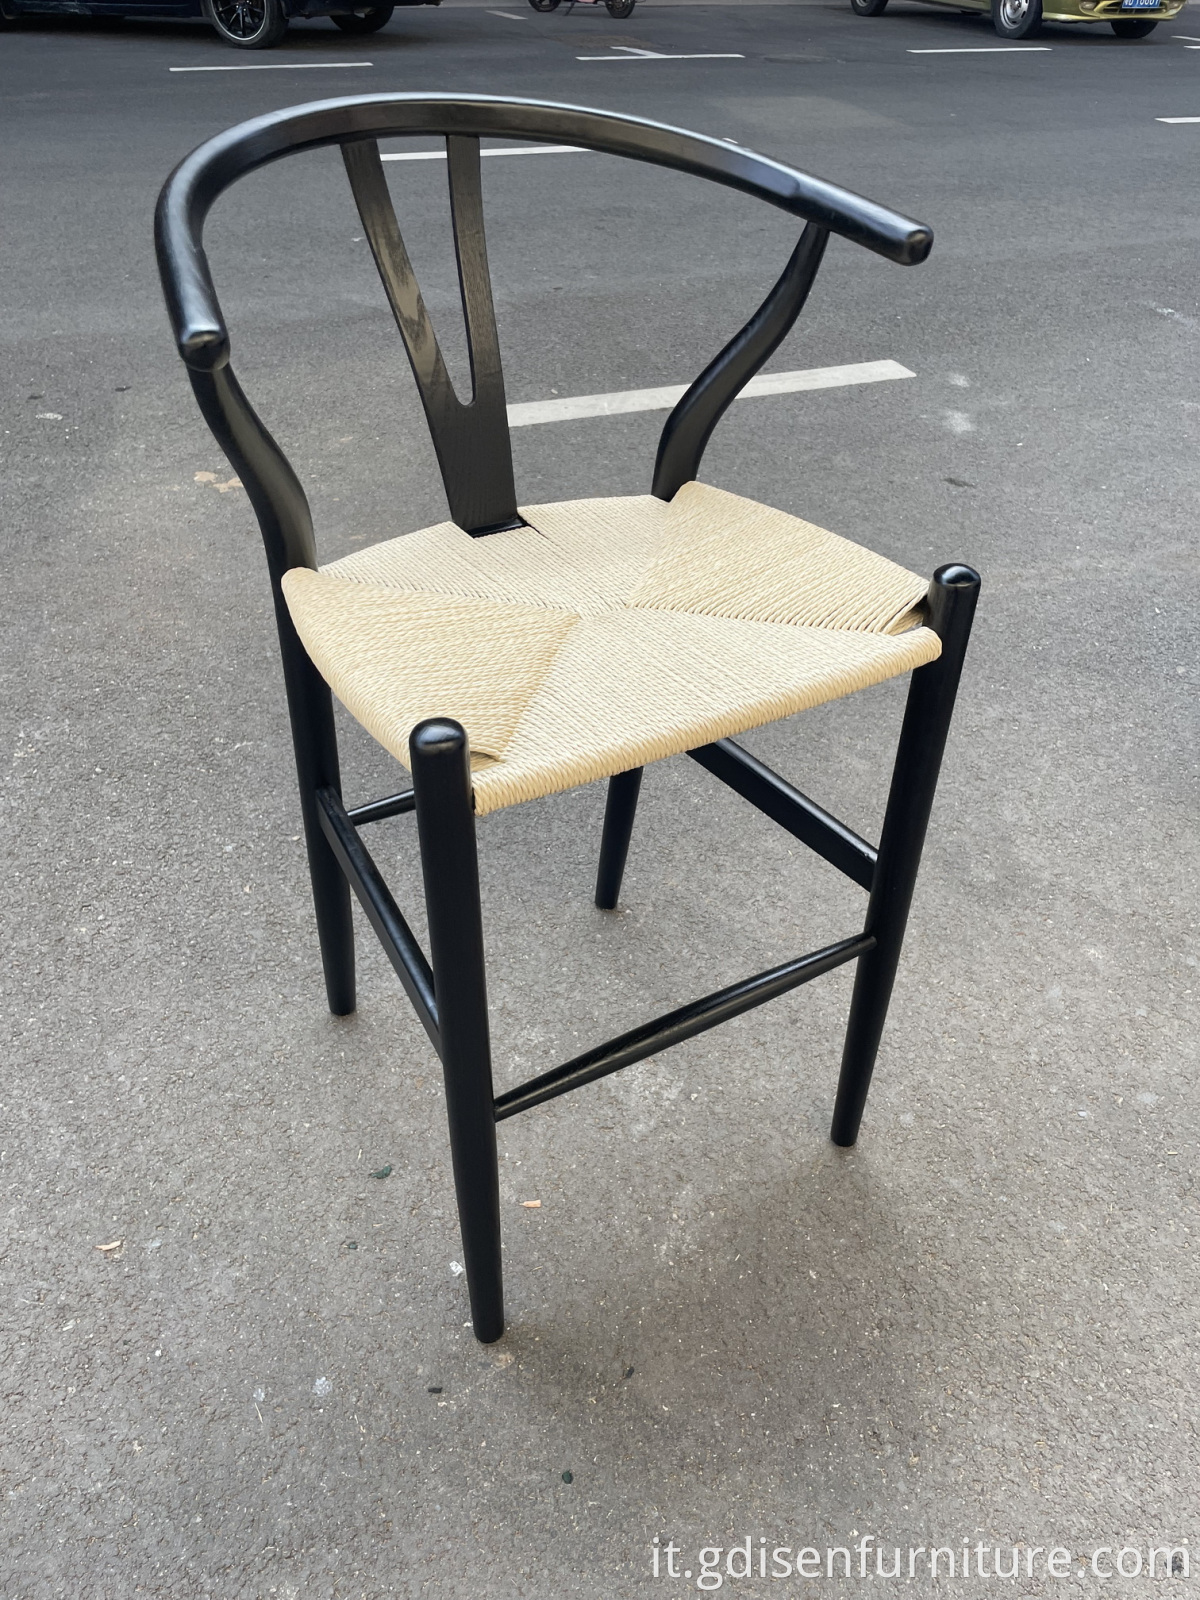 Vendita a caldo Design europeo Mobili da bar Y sedia in legno sgabello in legno massiccio